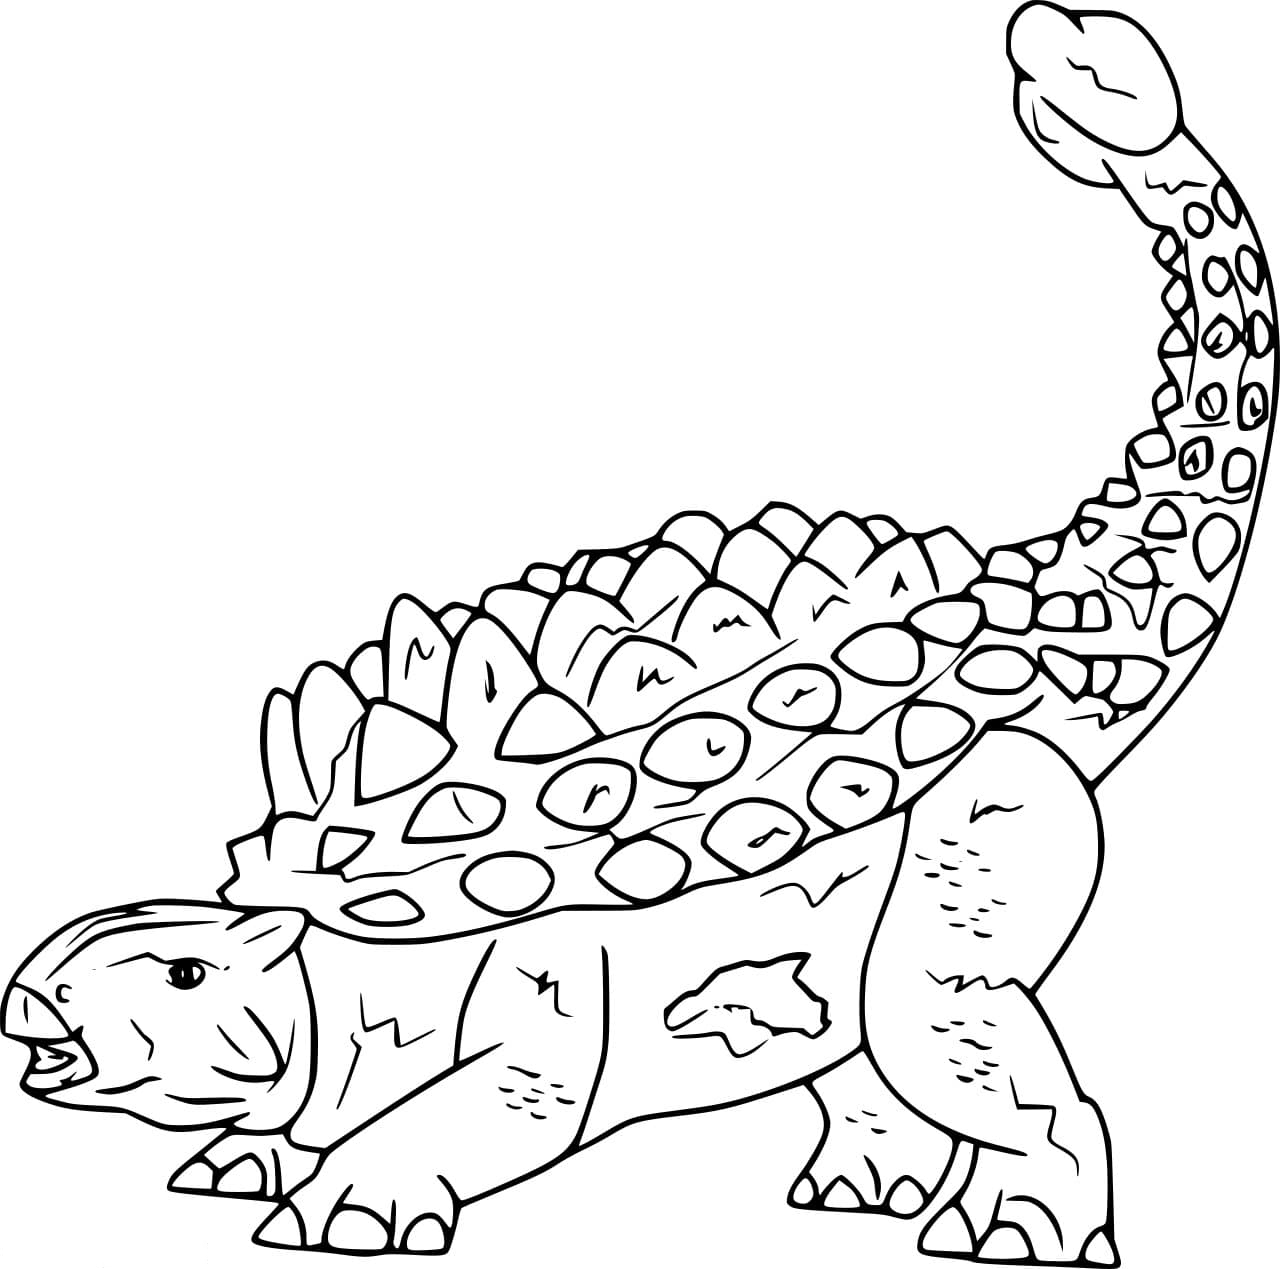 Crichtonsaurus Ankylosaurid Dinosaur Coloring Page